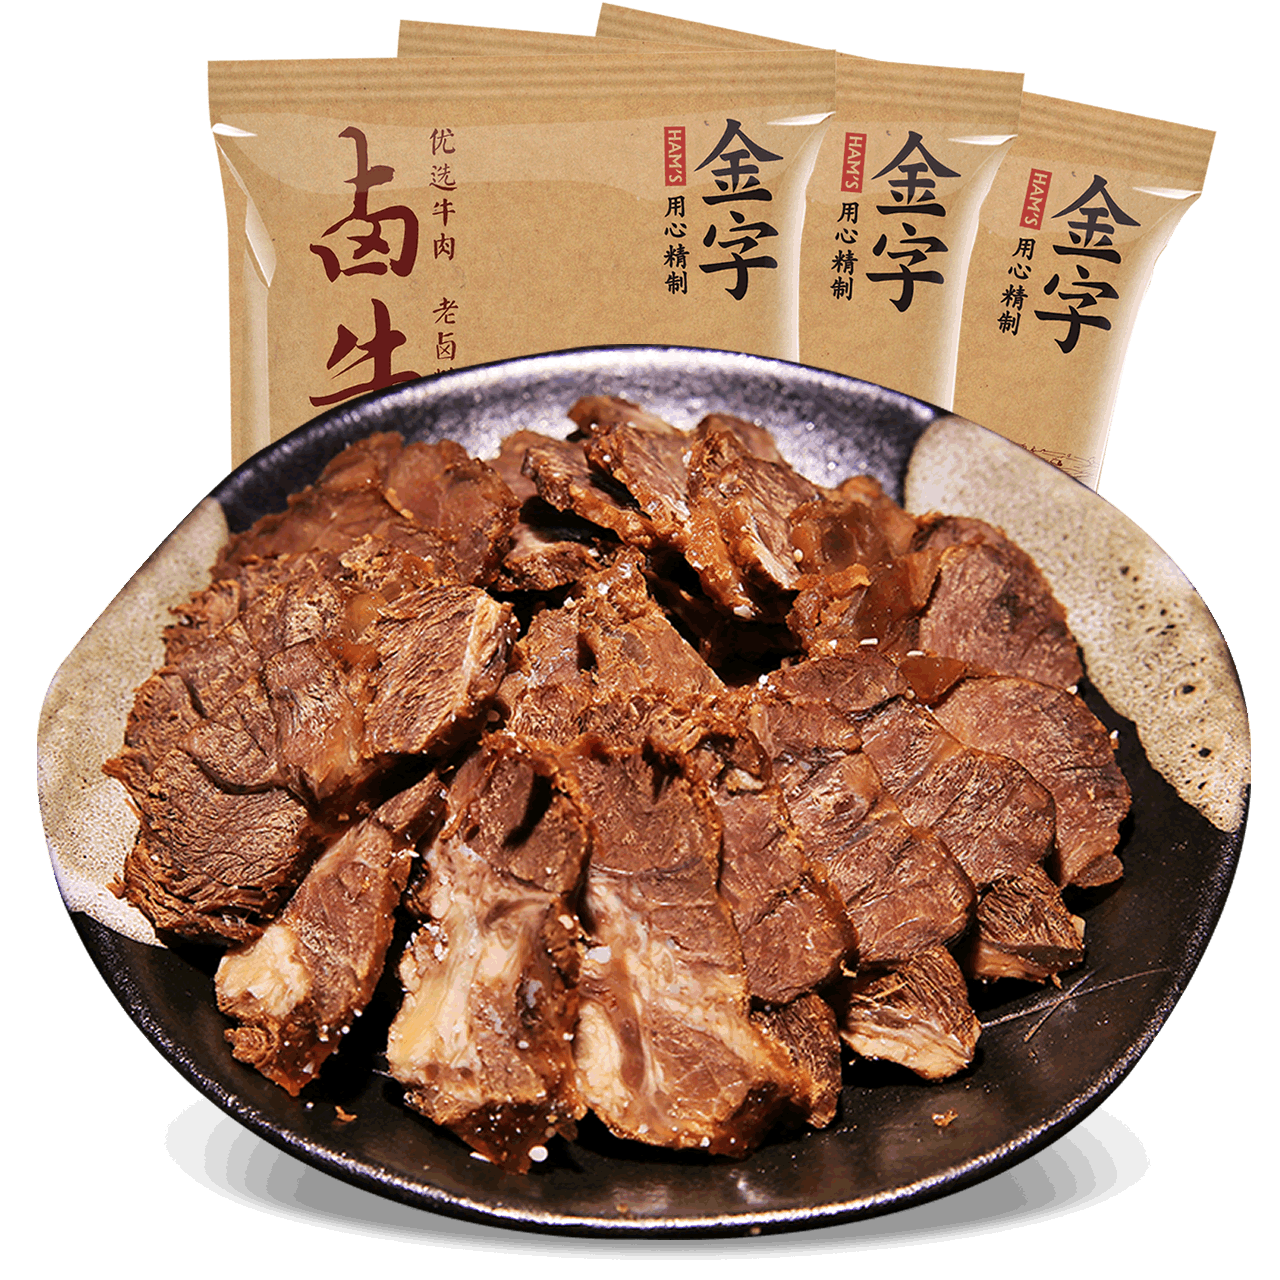 【金字火腿】 卤牛肉180g*3包   卤肉熟食 黄牛肉肉块 高汤卤制